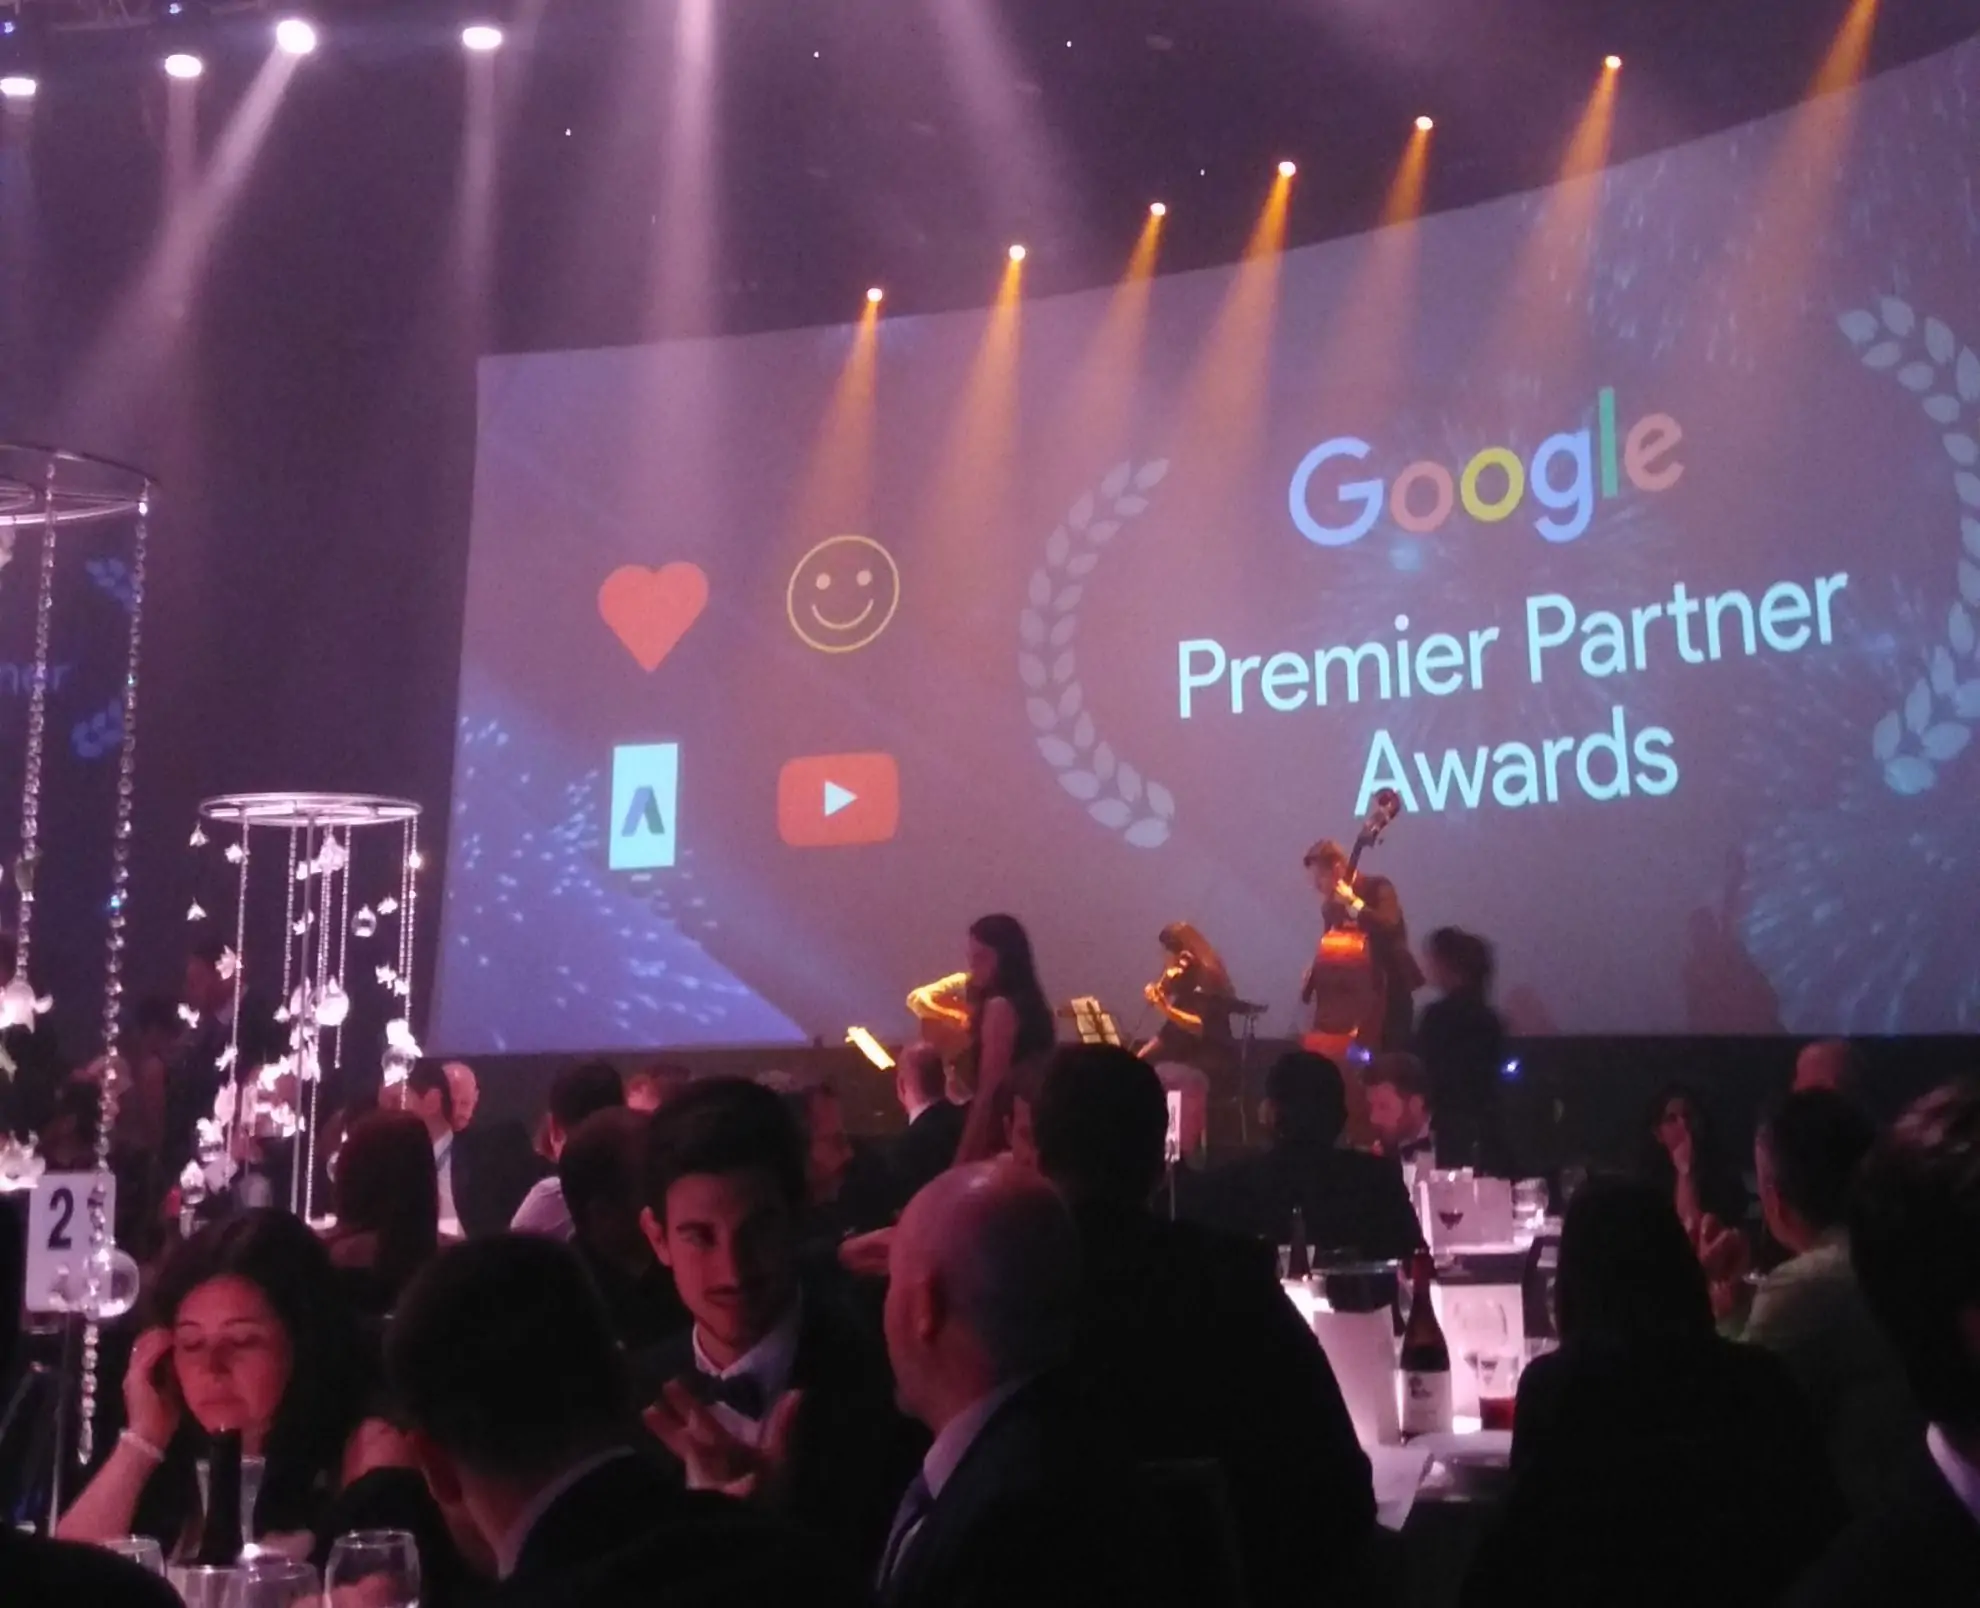 Google Premier Partner Awards 2016 Dublin